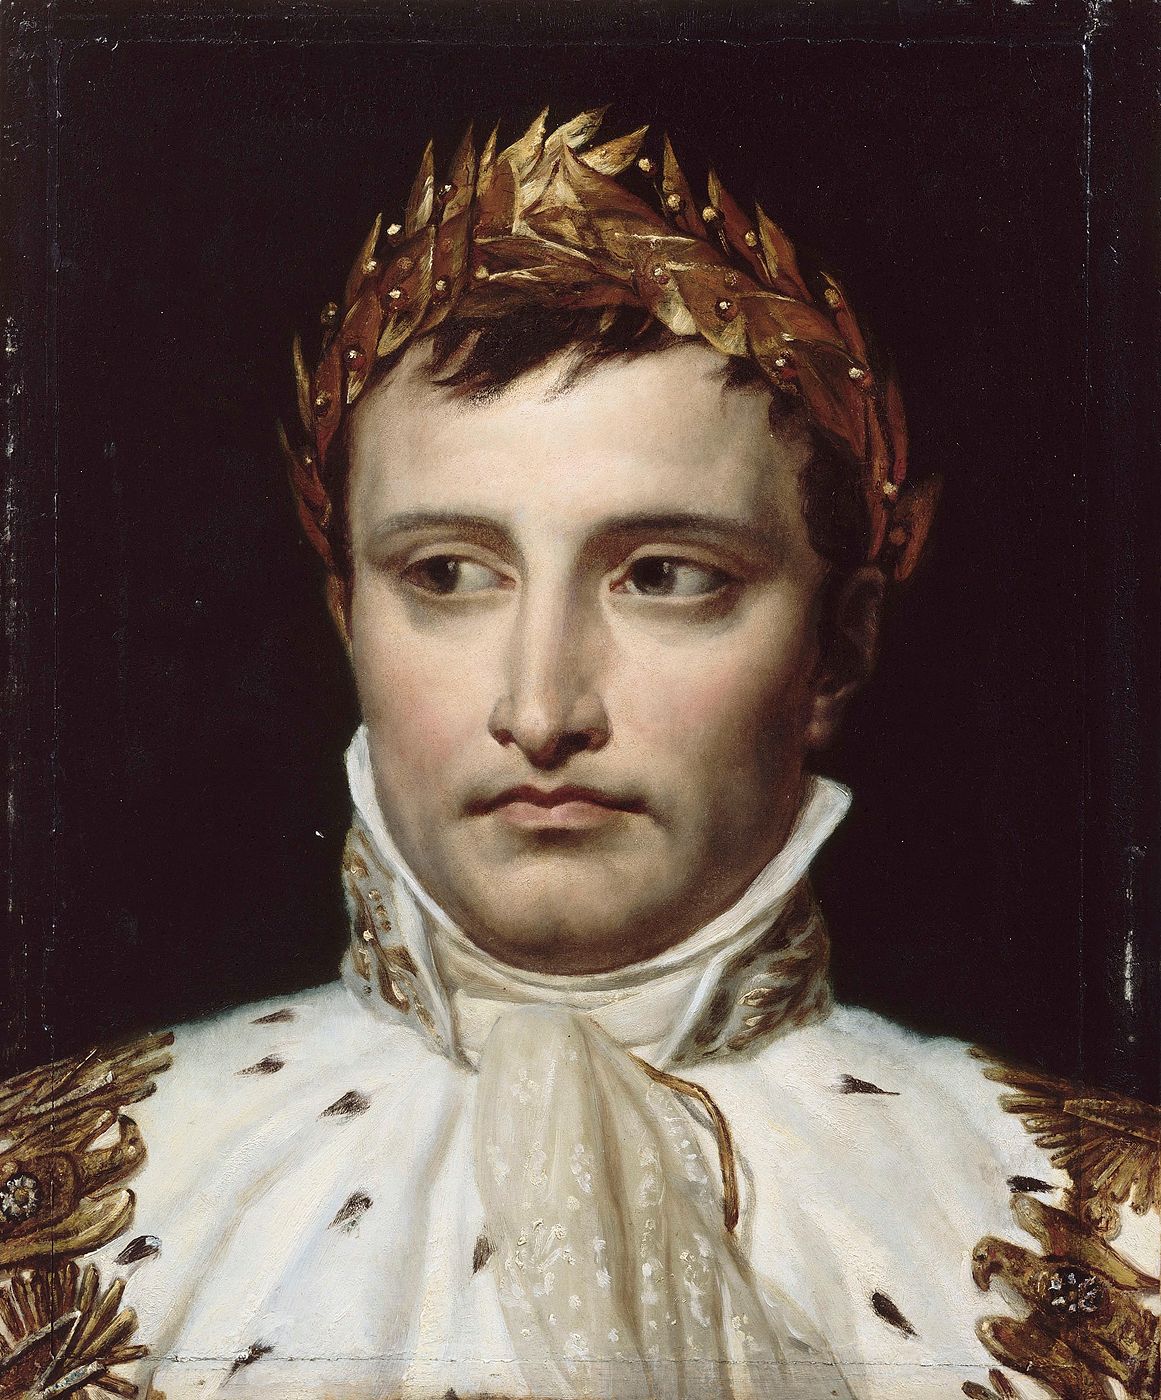 Étude de Tête pour un portrait de Napoléon Ier en costume de Sacre.